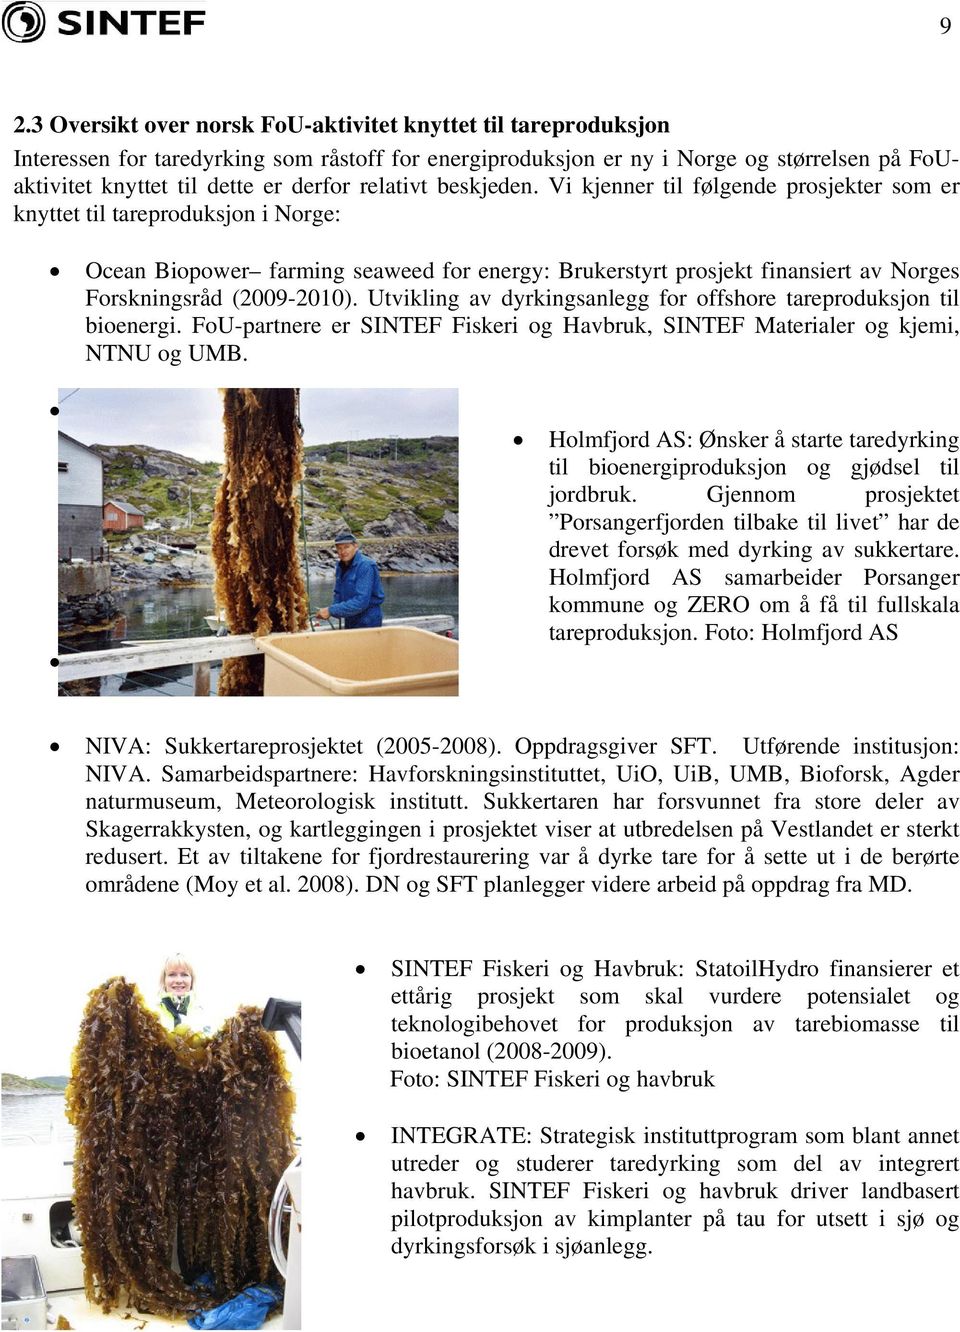 Vi kjenner til følgende prosjekter som er knyttet til tareproduksjon i Norge: Ocean Biopower farming seaweed for energy: Brukerstyrt prosjekt finansiert av Norges Forskningsråd (2009-2010).